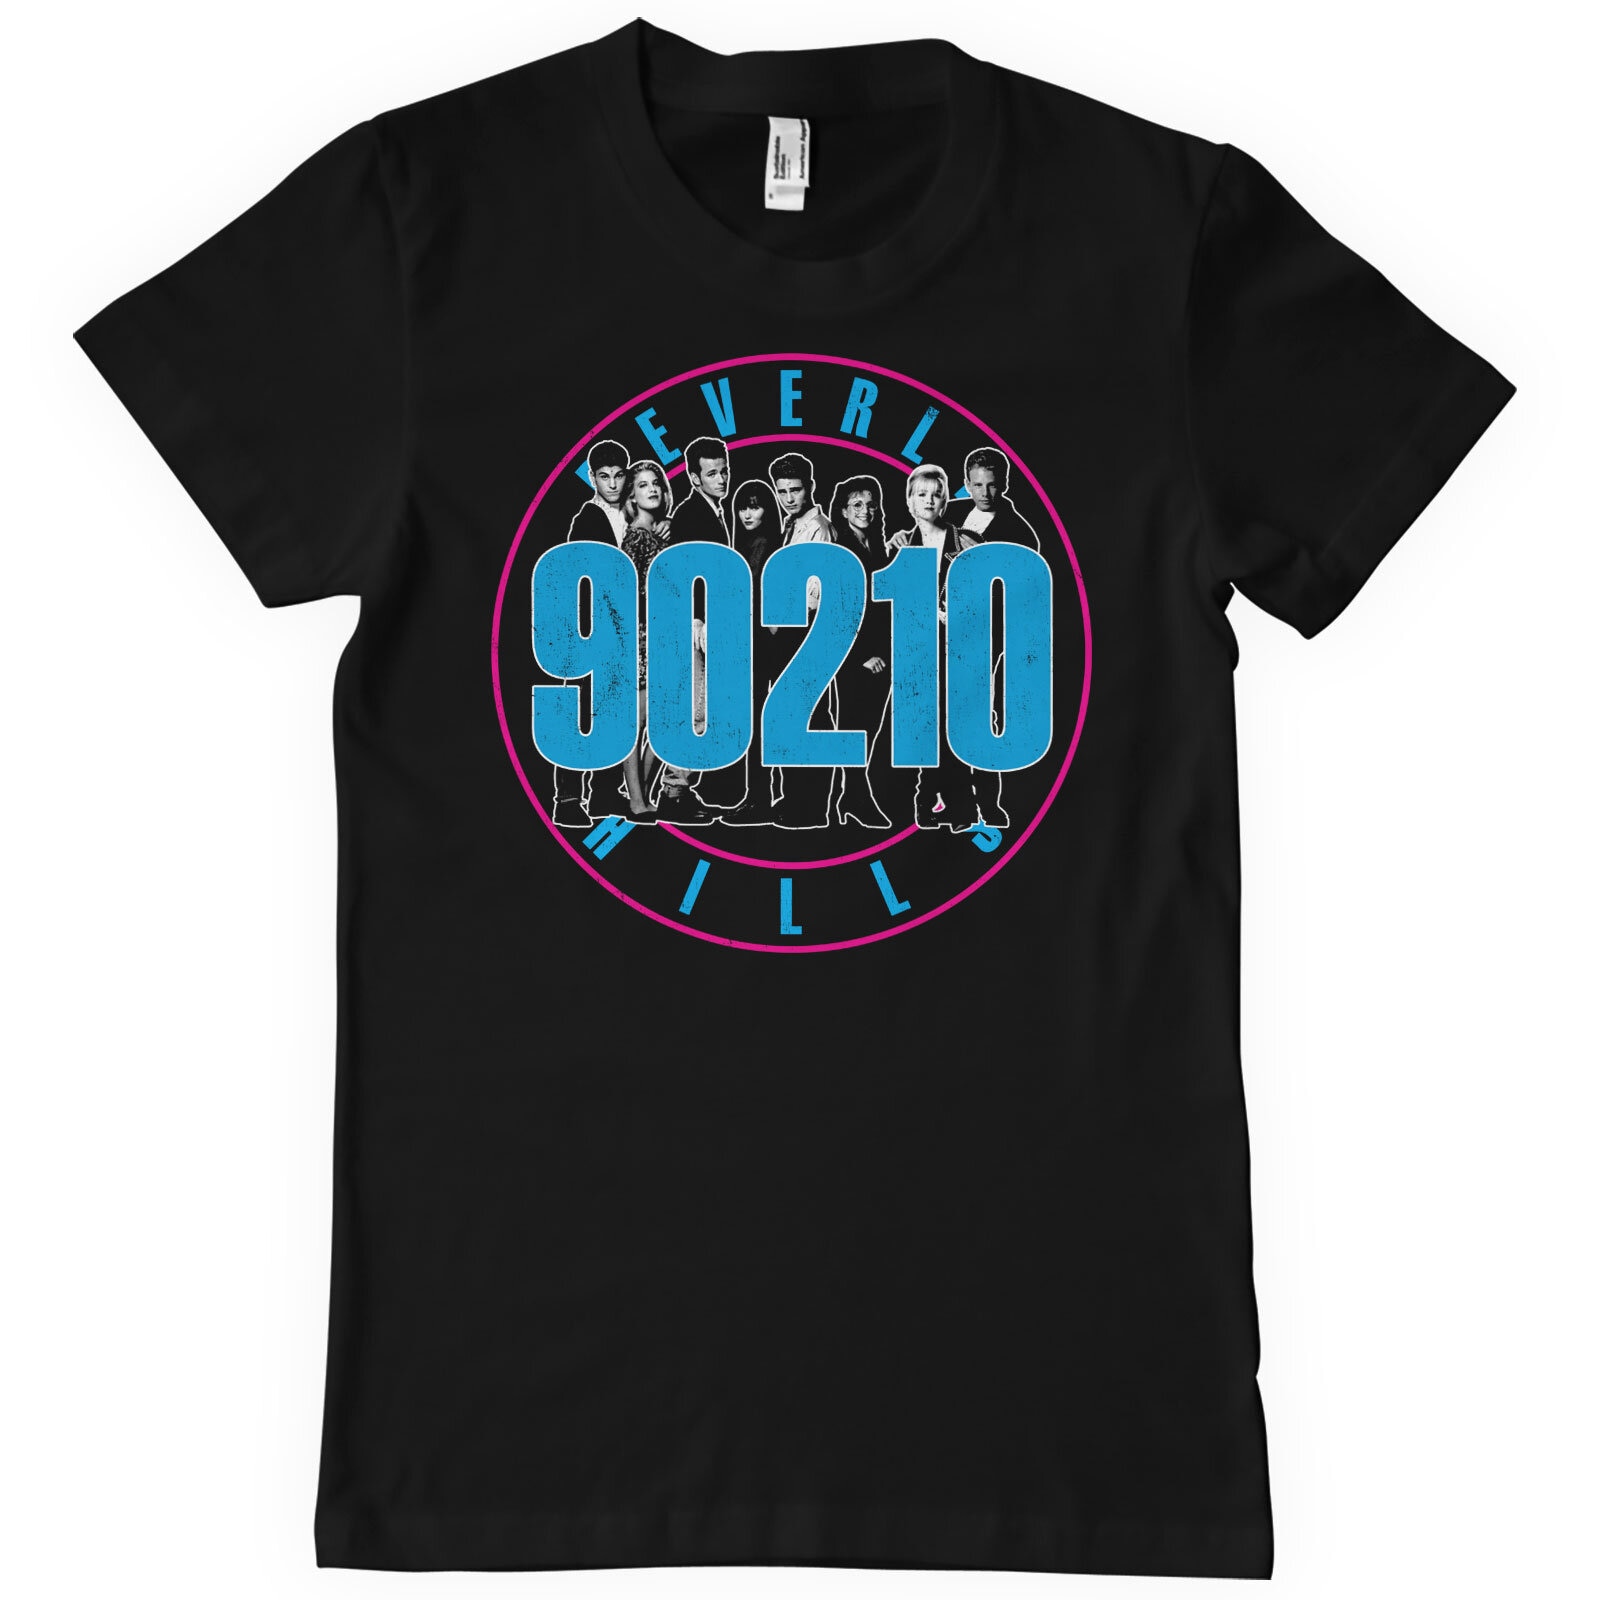 Beverly Hills 90210 Cast T-Shirt